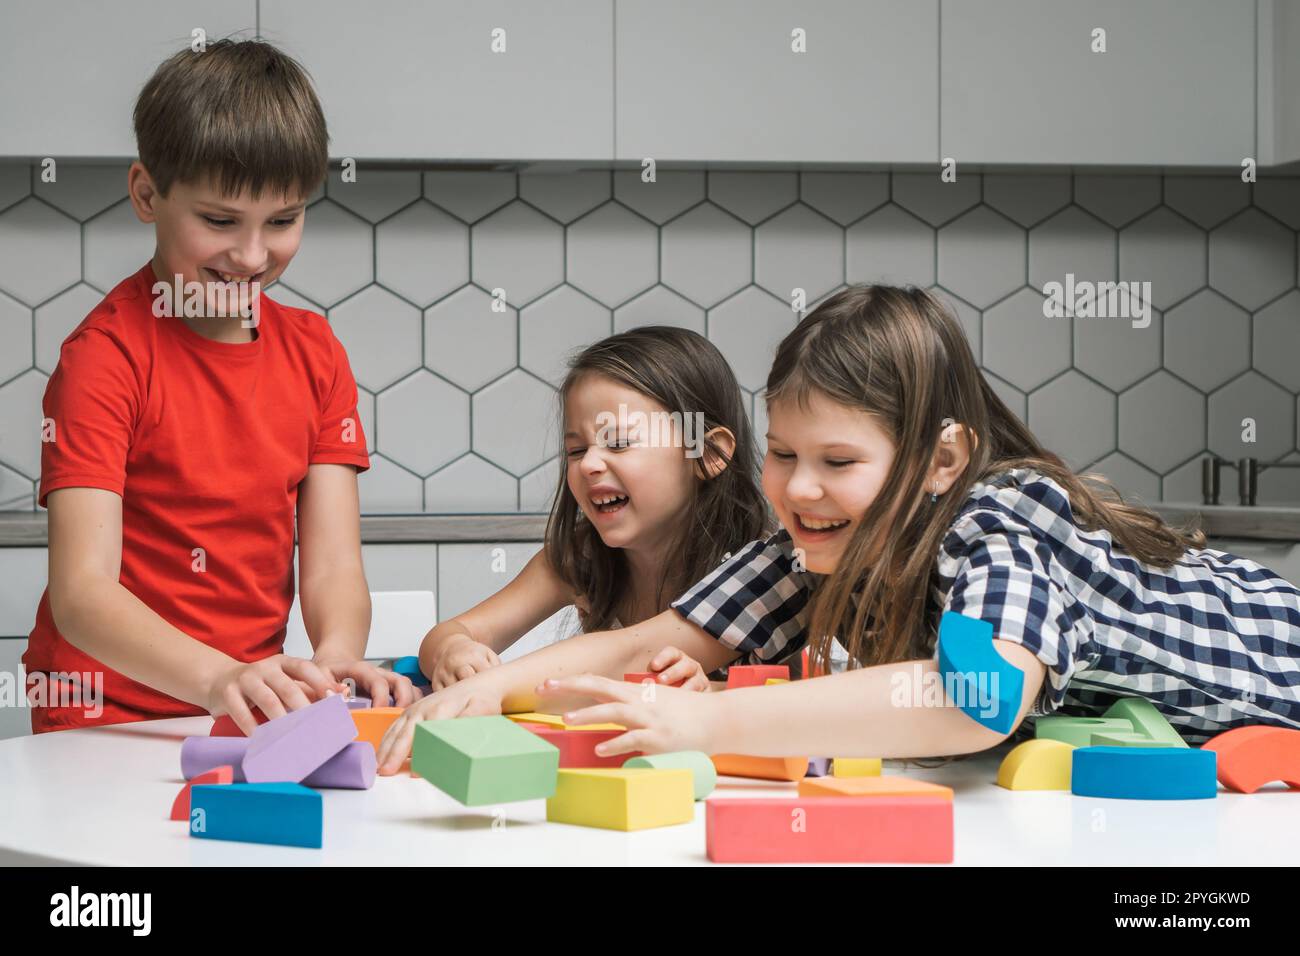 Enfants riants, drôles et ludiques de filles se trompant et de garçon jouant avec des briques colorées et des éléments de construction Banque D'Images